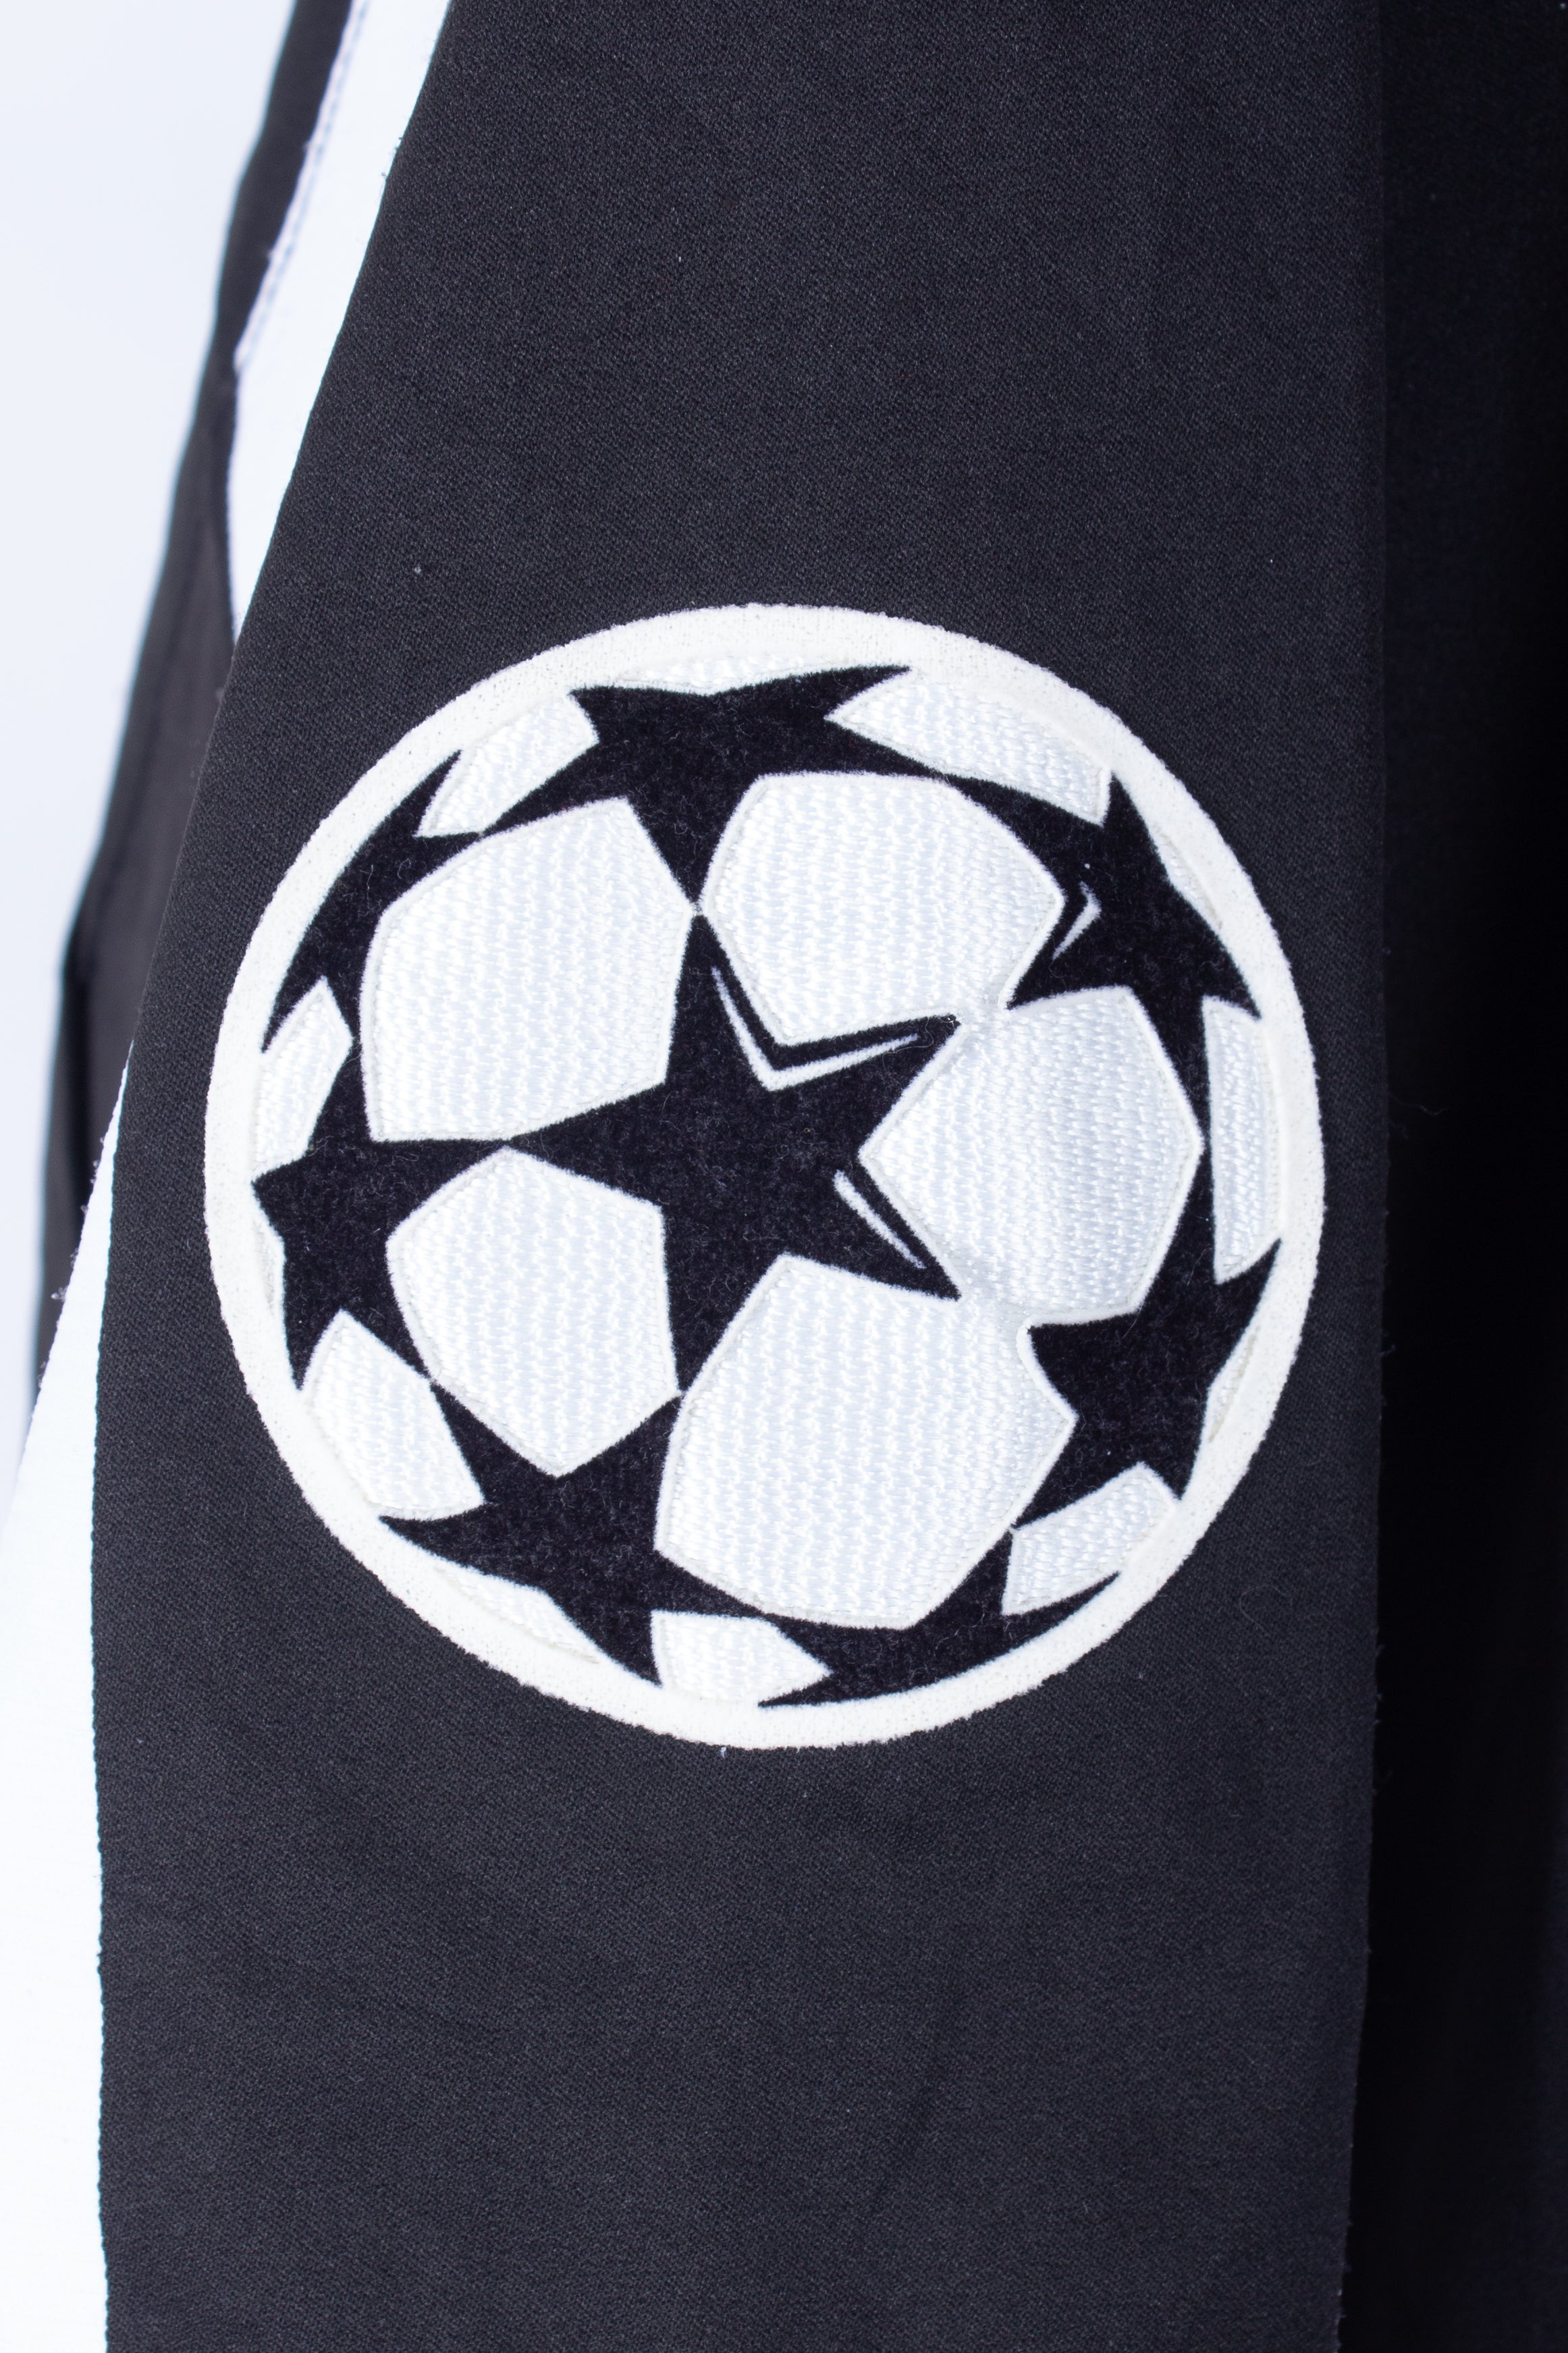 Juventus 2004/05 European Home Shirt